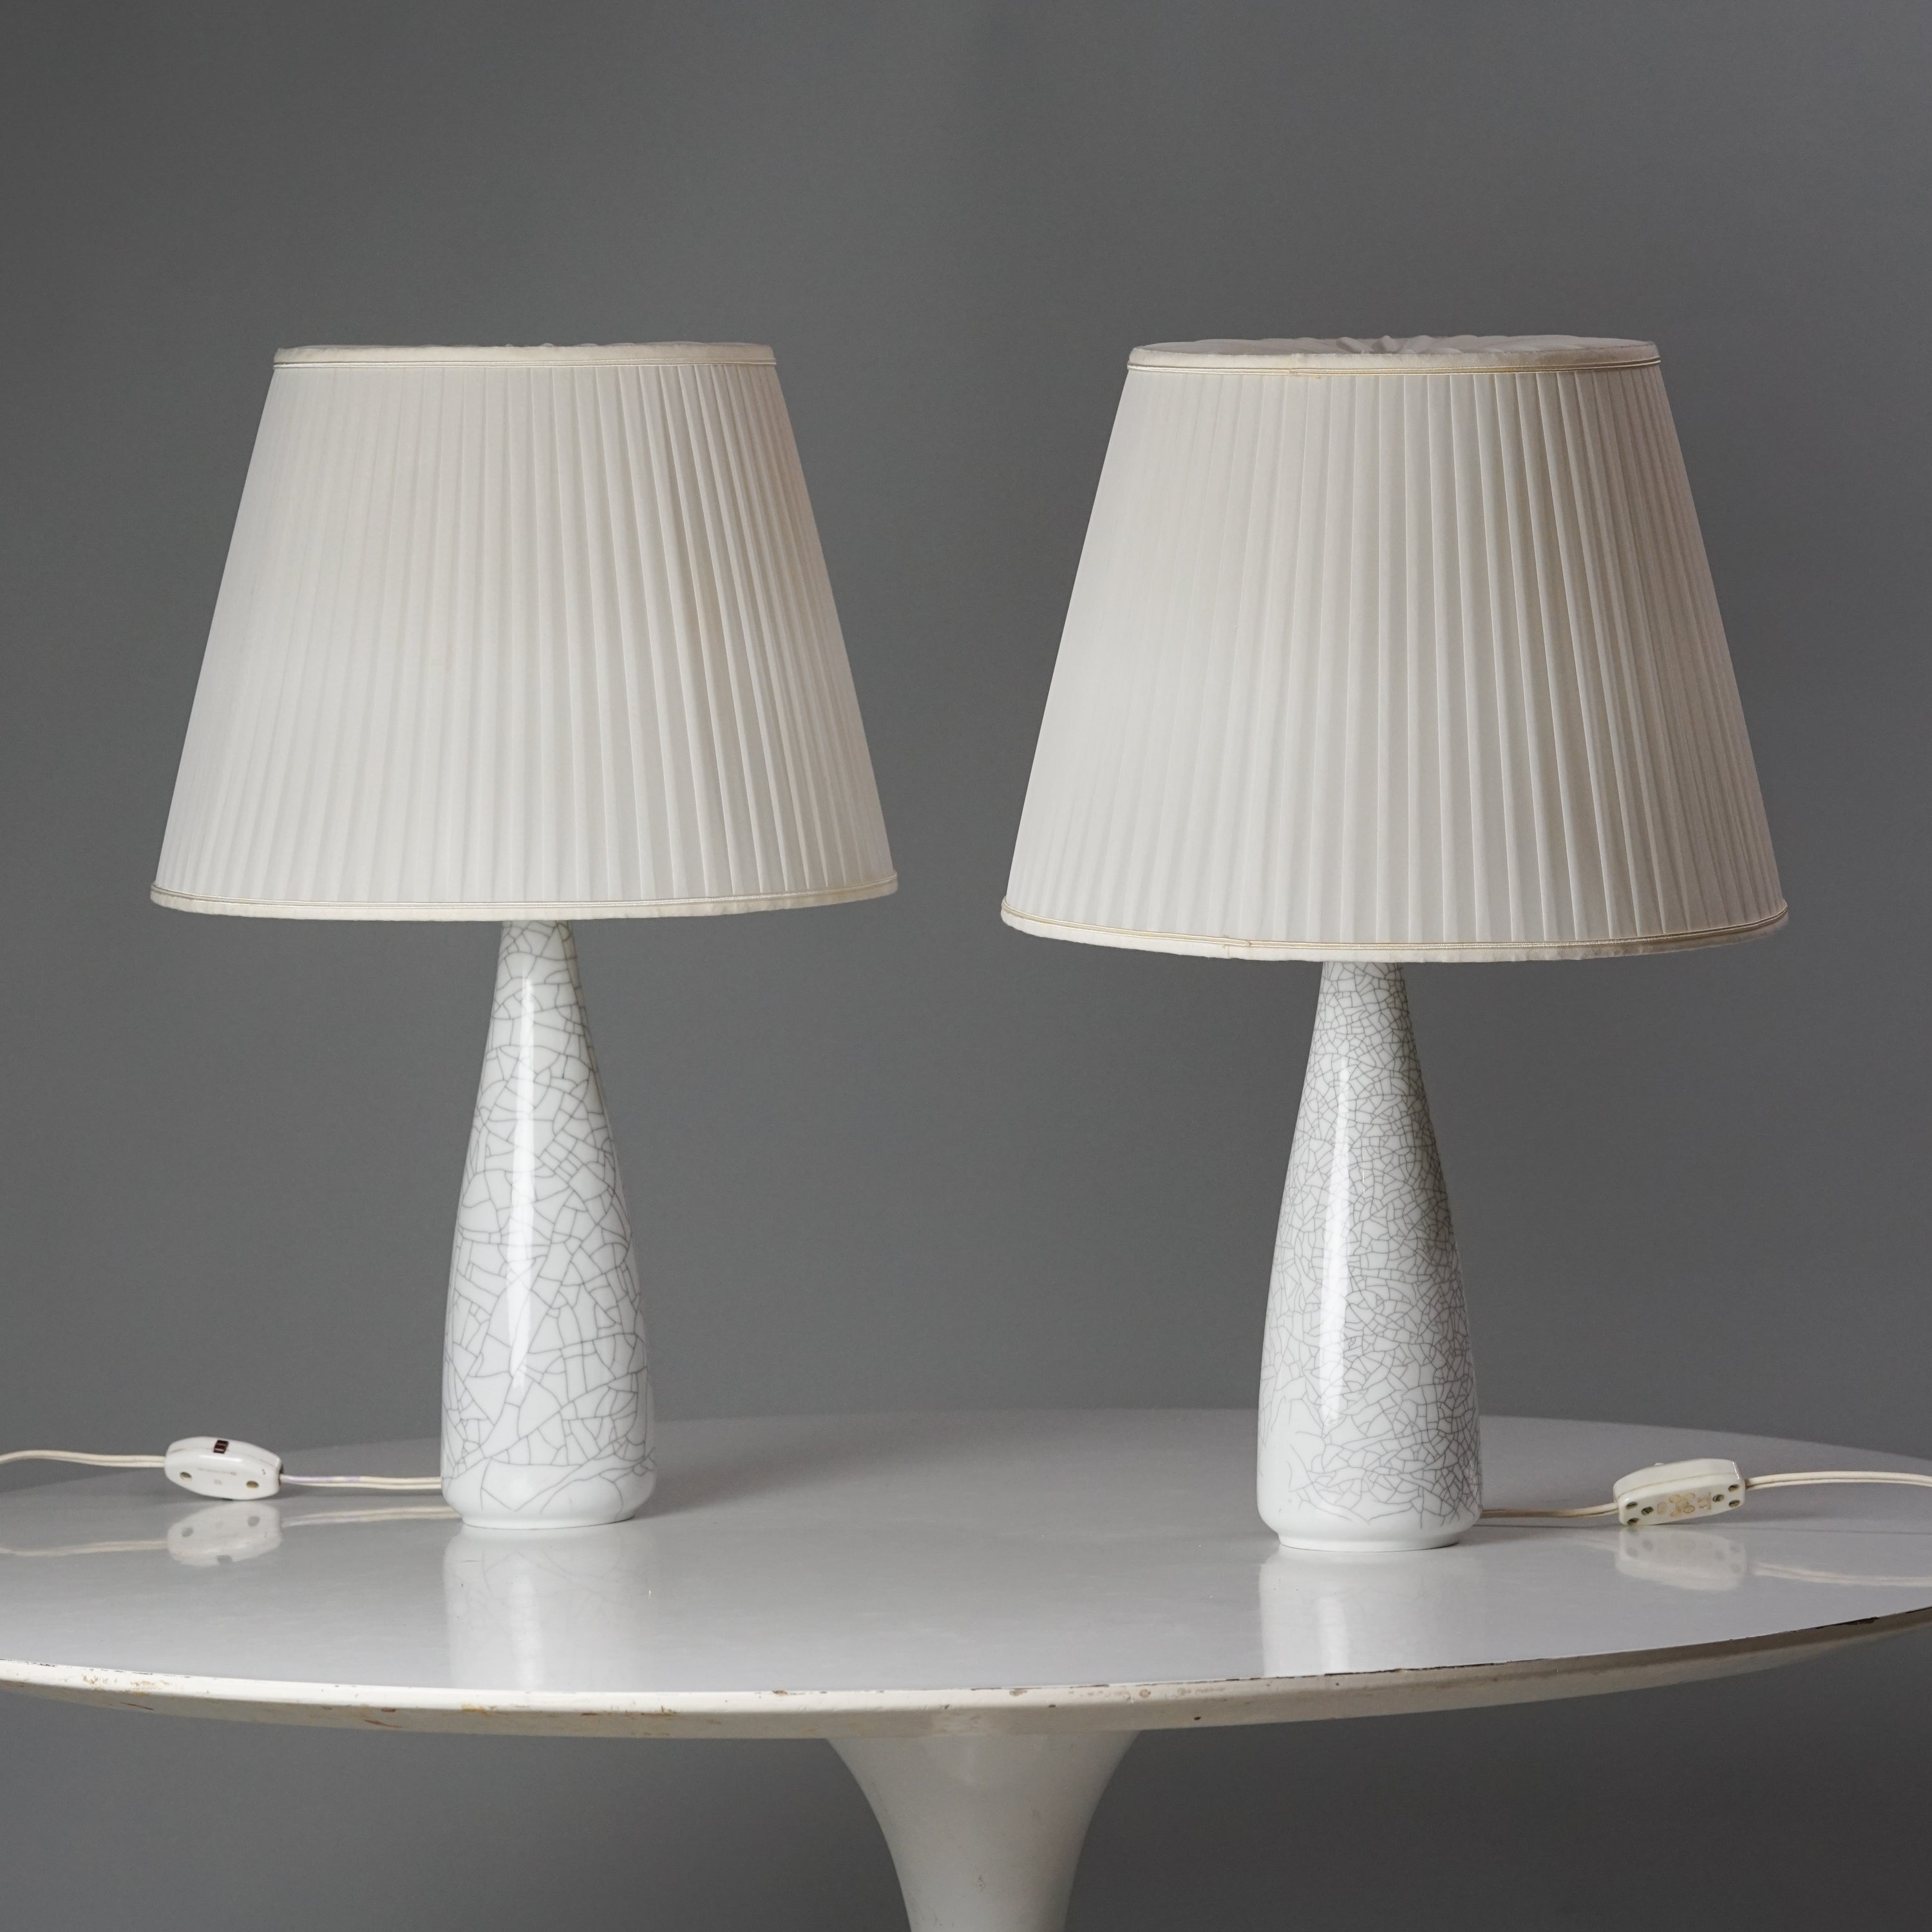 Kaksi samanlaista lamppua, joissa valkoiset laskostetut varjostimet. Lamppujen valkoisissa jaloissa on harmaa kuviointi, joka muistuttaa marmoria.